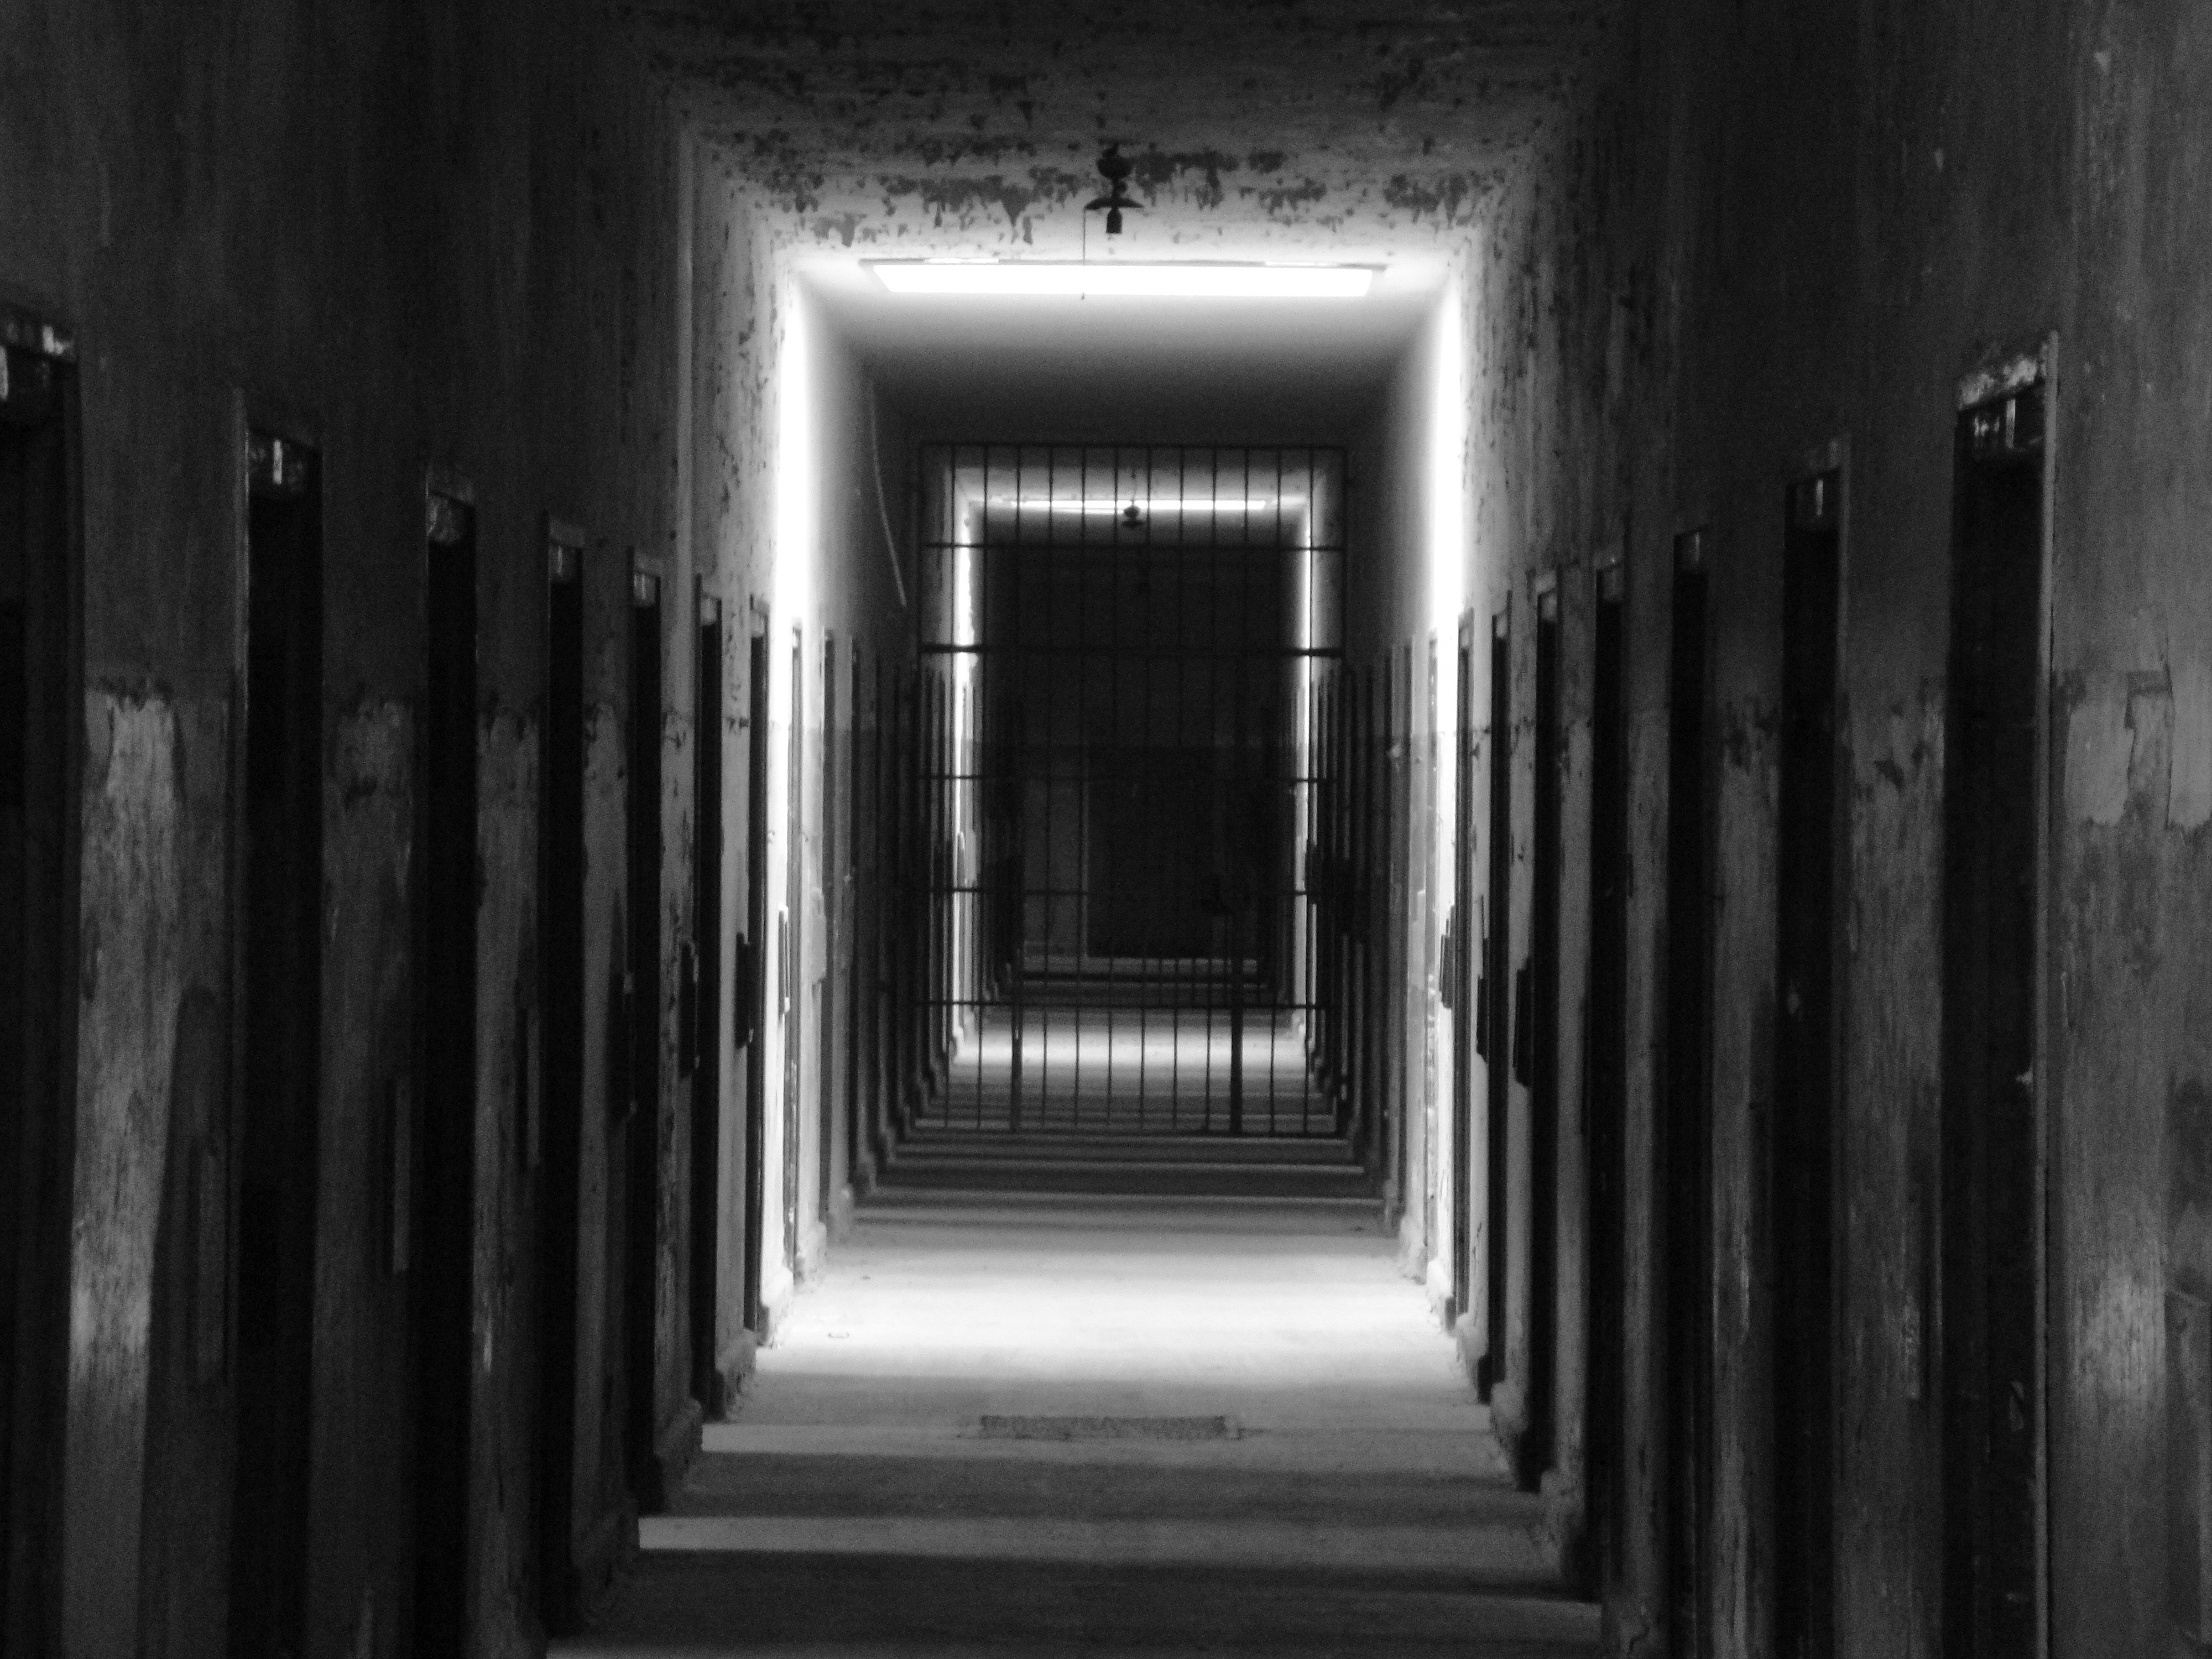 Interiors Of A Prison